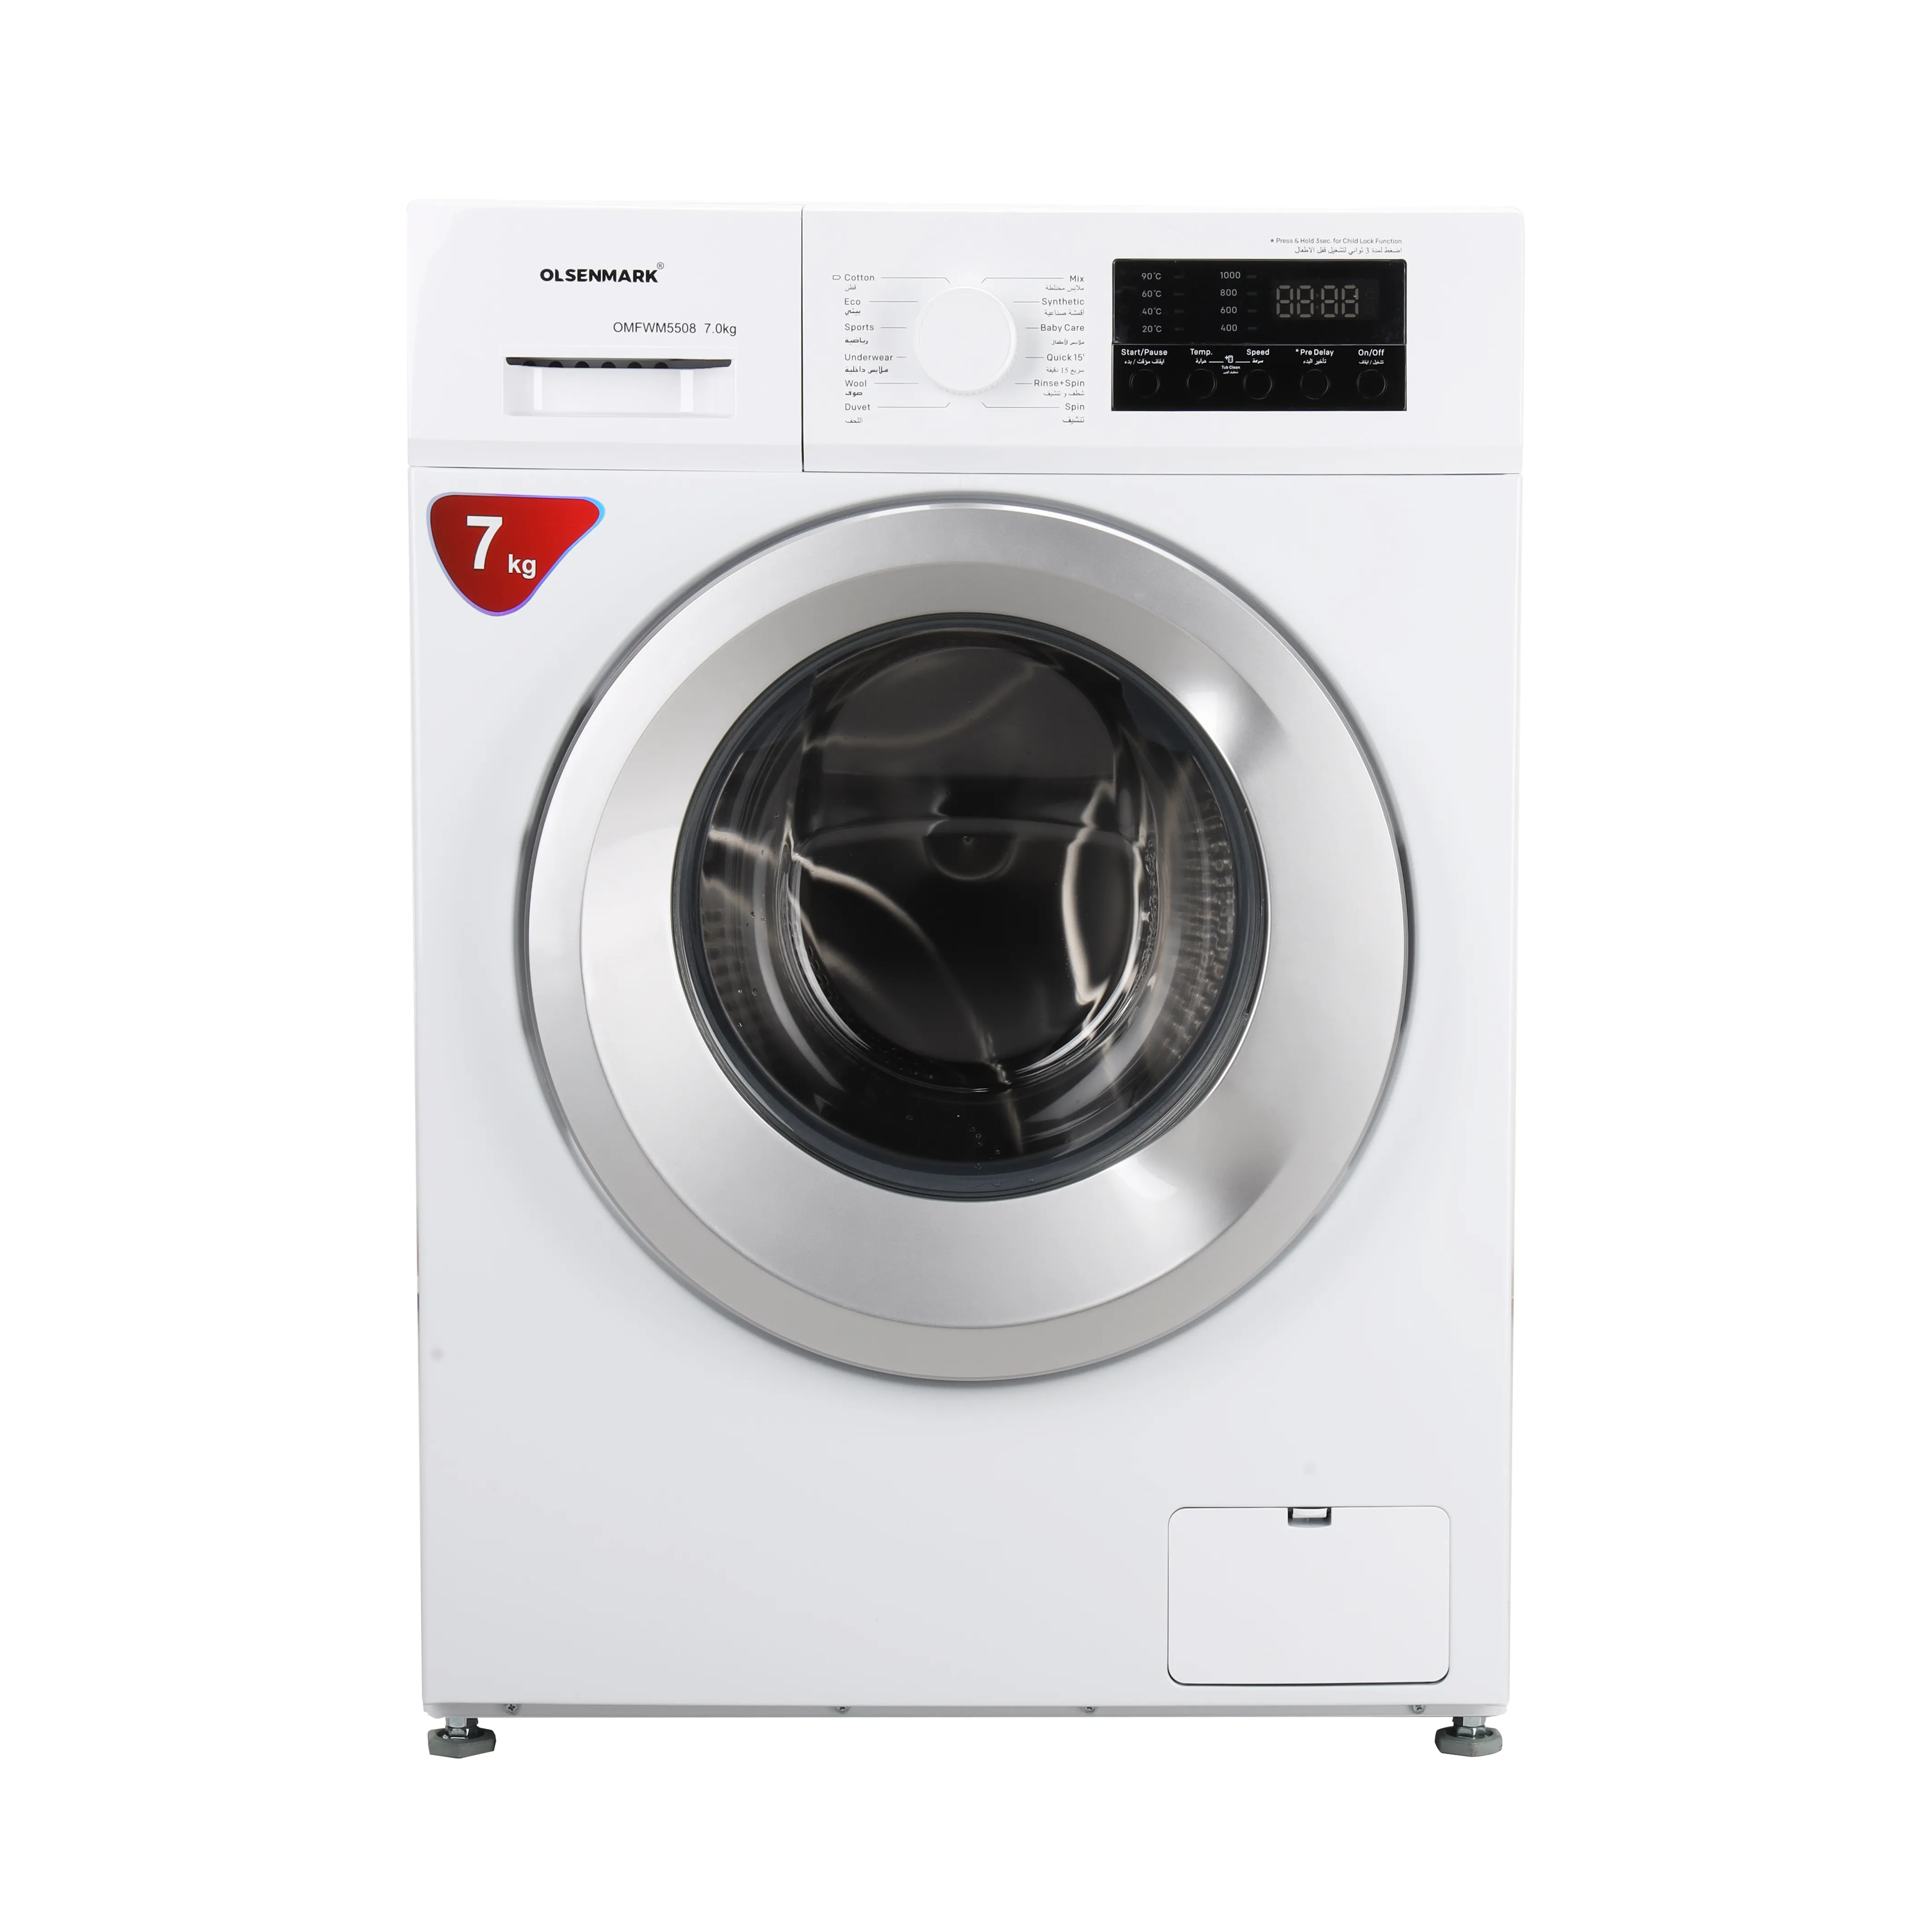 Olsenmark Fully Automatic Front Load Washing Machine - 12 Washing Programs, High Washing & Spinning Efficiency, Child Lock Safe, Auto Imbalance & Auto Restart 2 Years Warranty